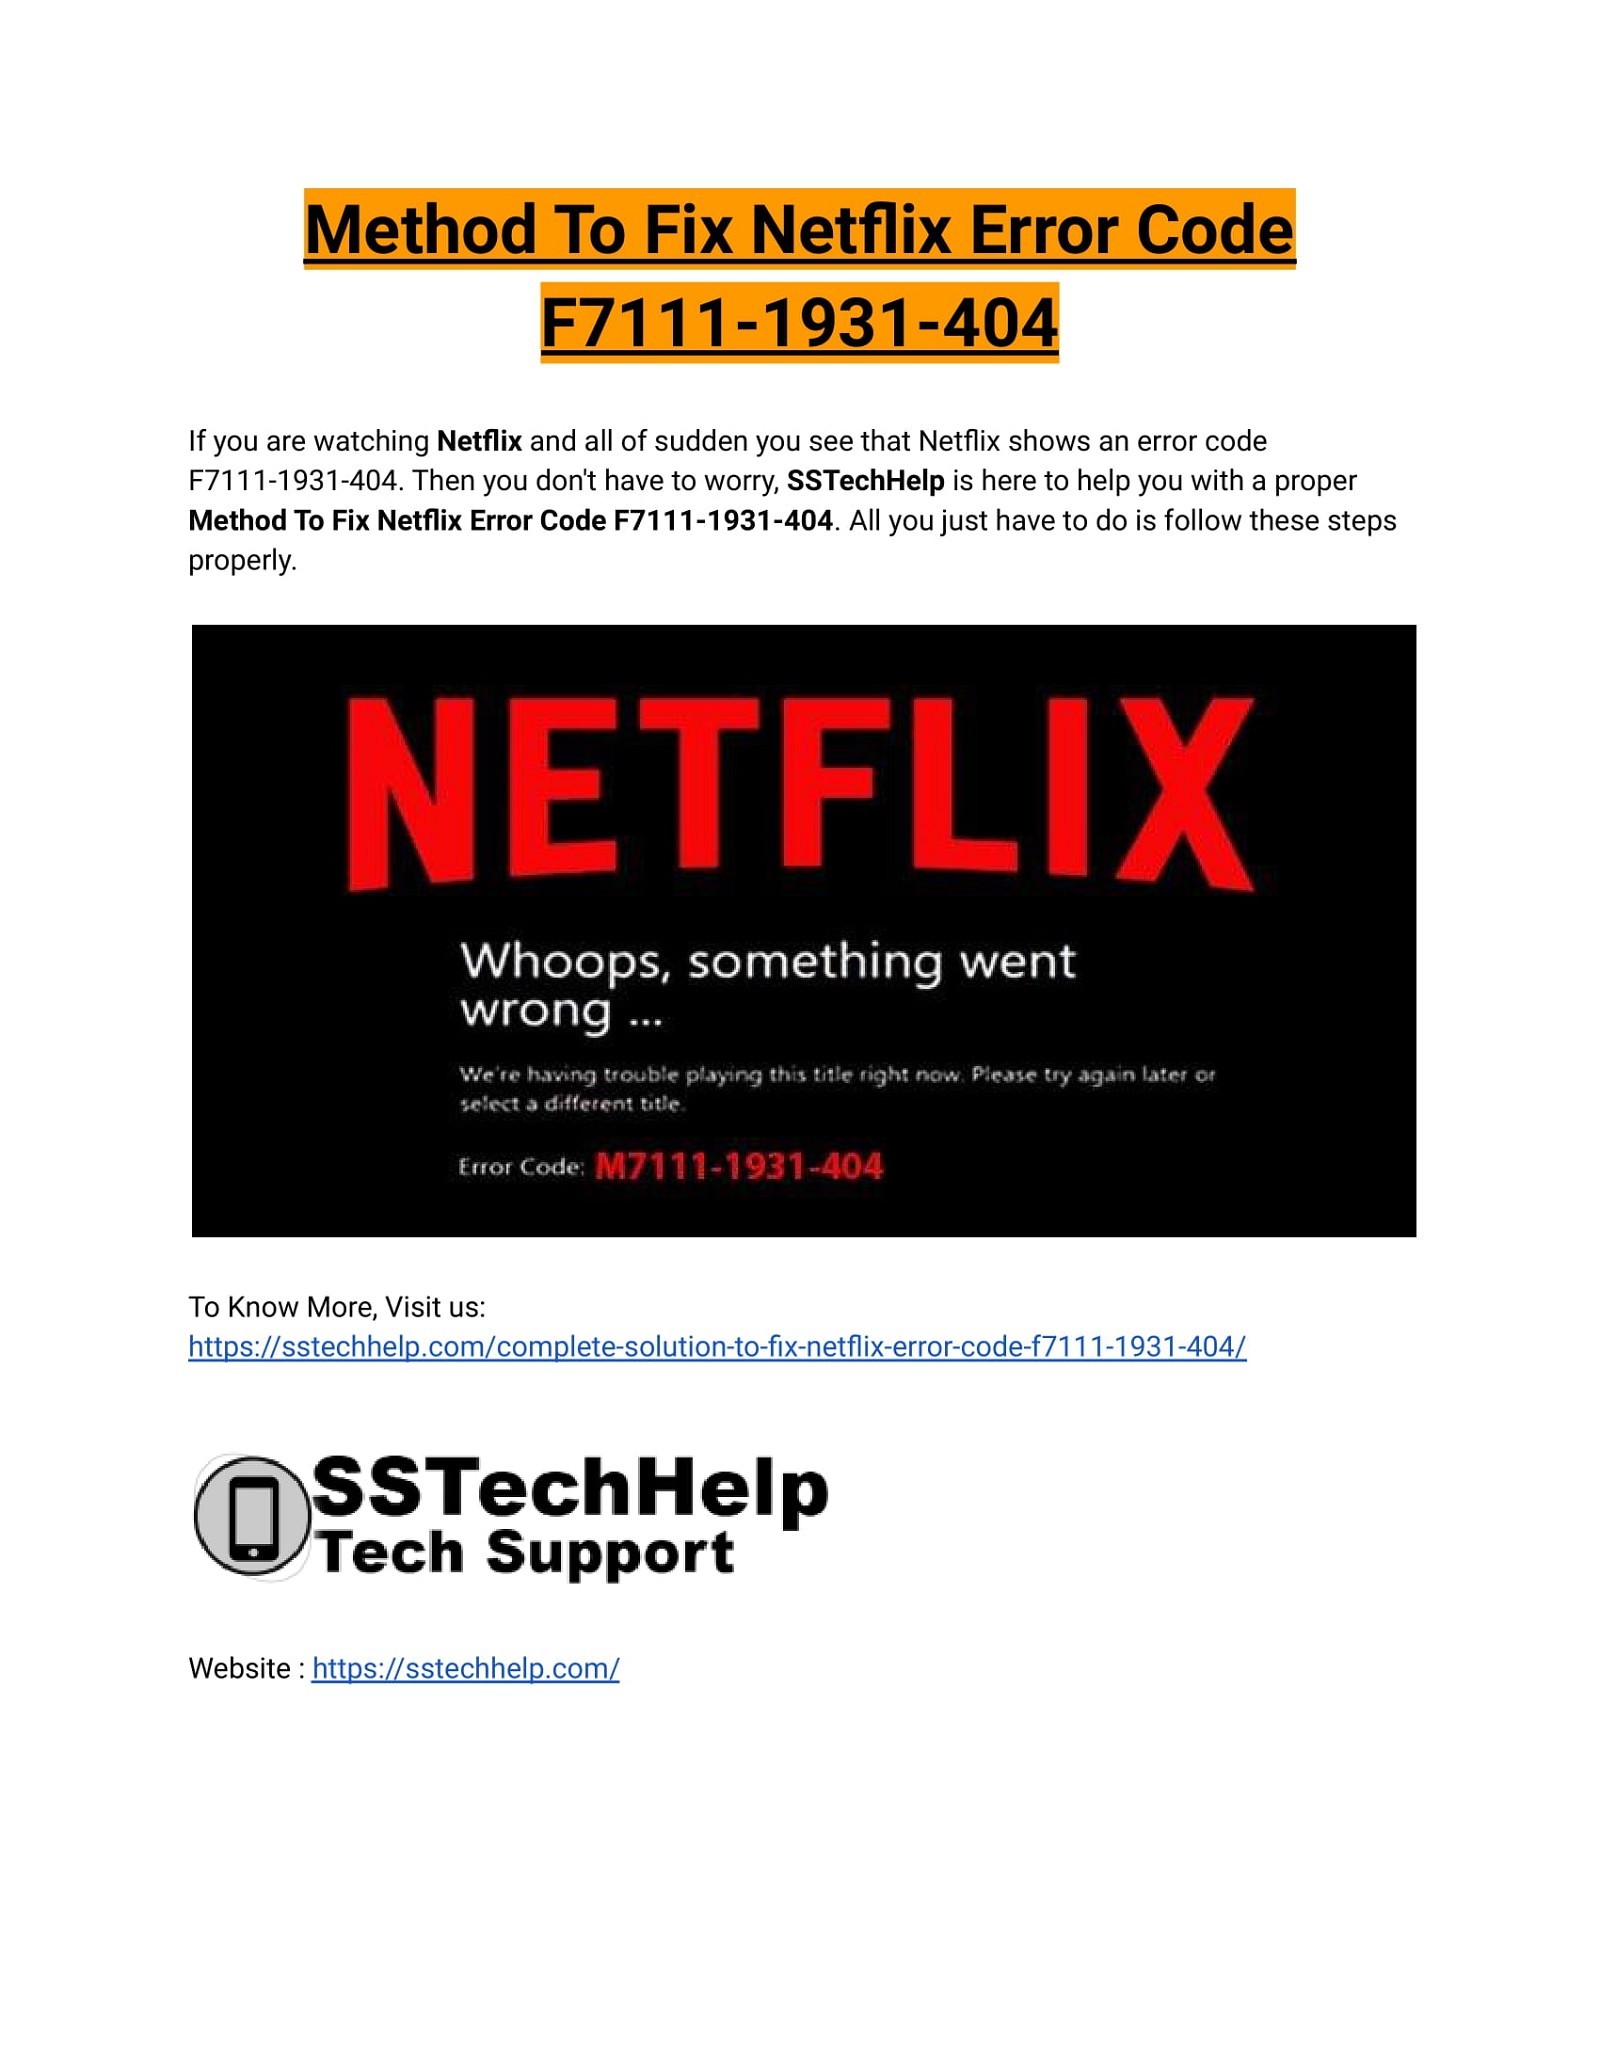 Method to Fix Netflix Error Code F7111-1931-404